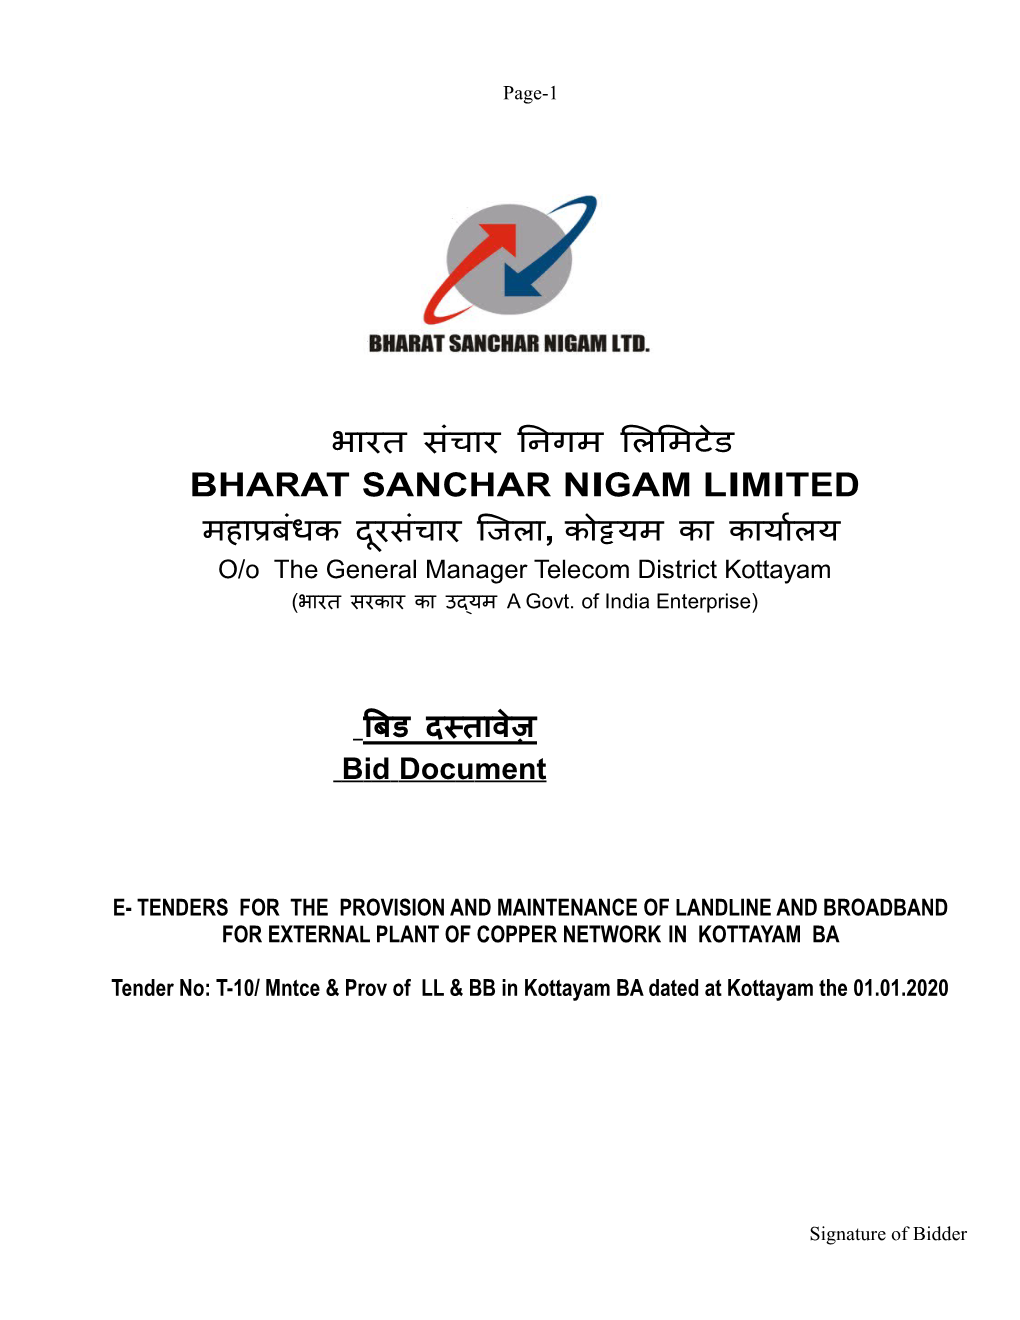 Bharat Sanchar Nigam Limited (A Govt. of India Enterprise)